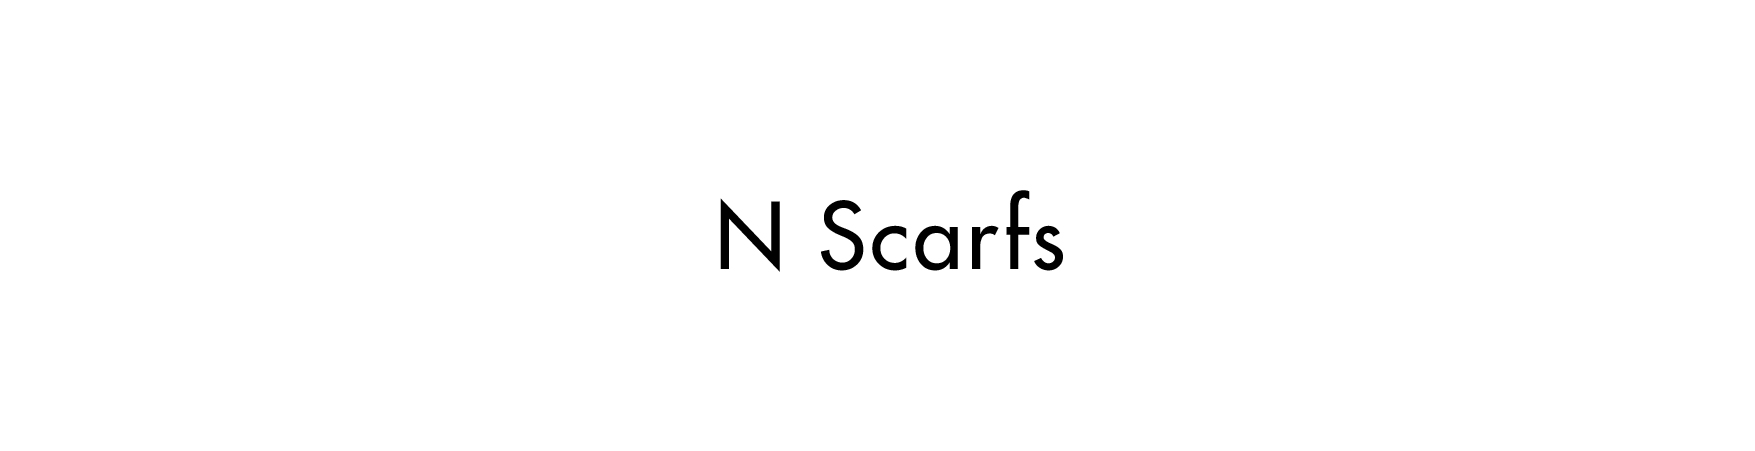 N Scarfs